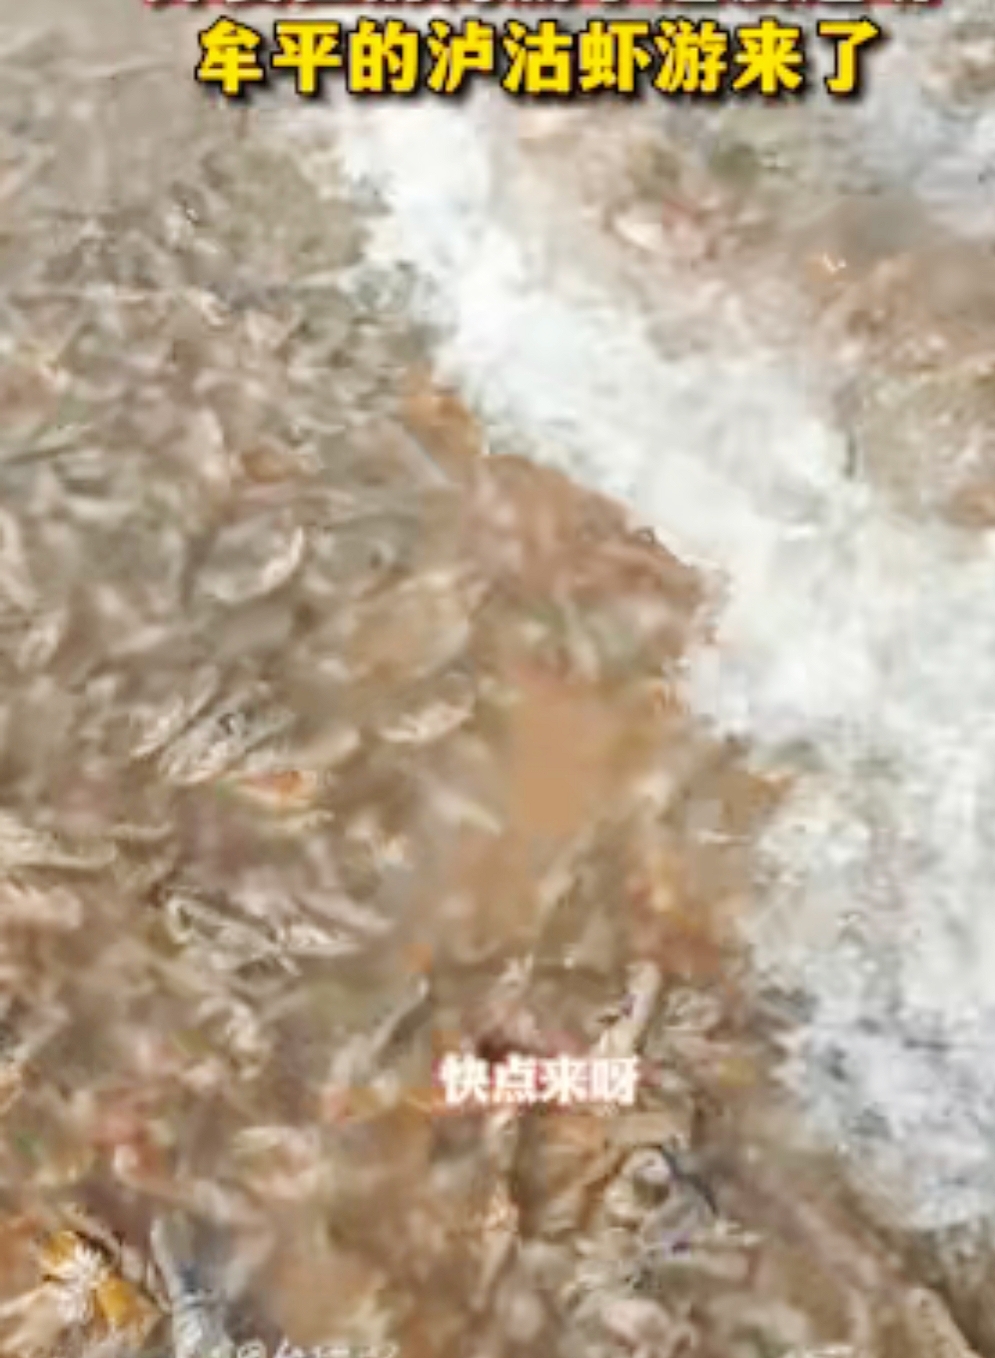 牟平区海边惊现大量活体沪沽虾